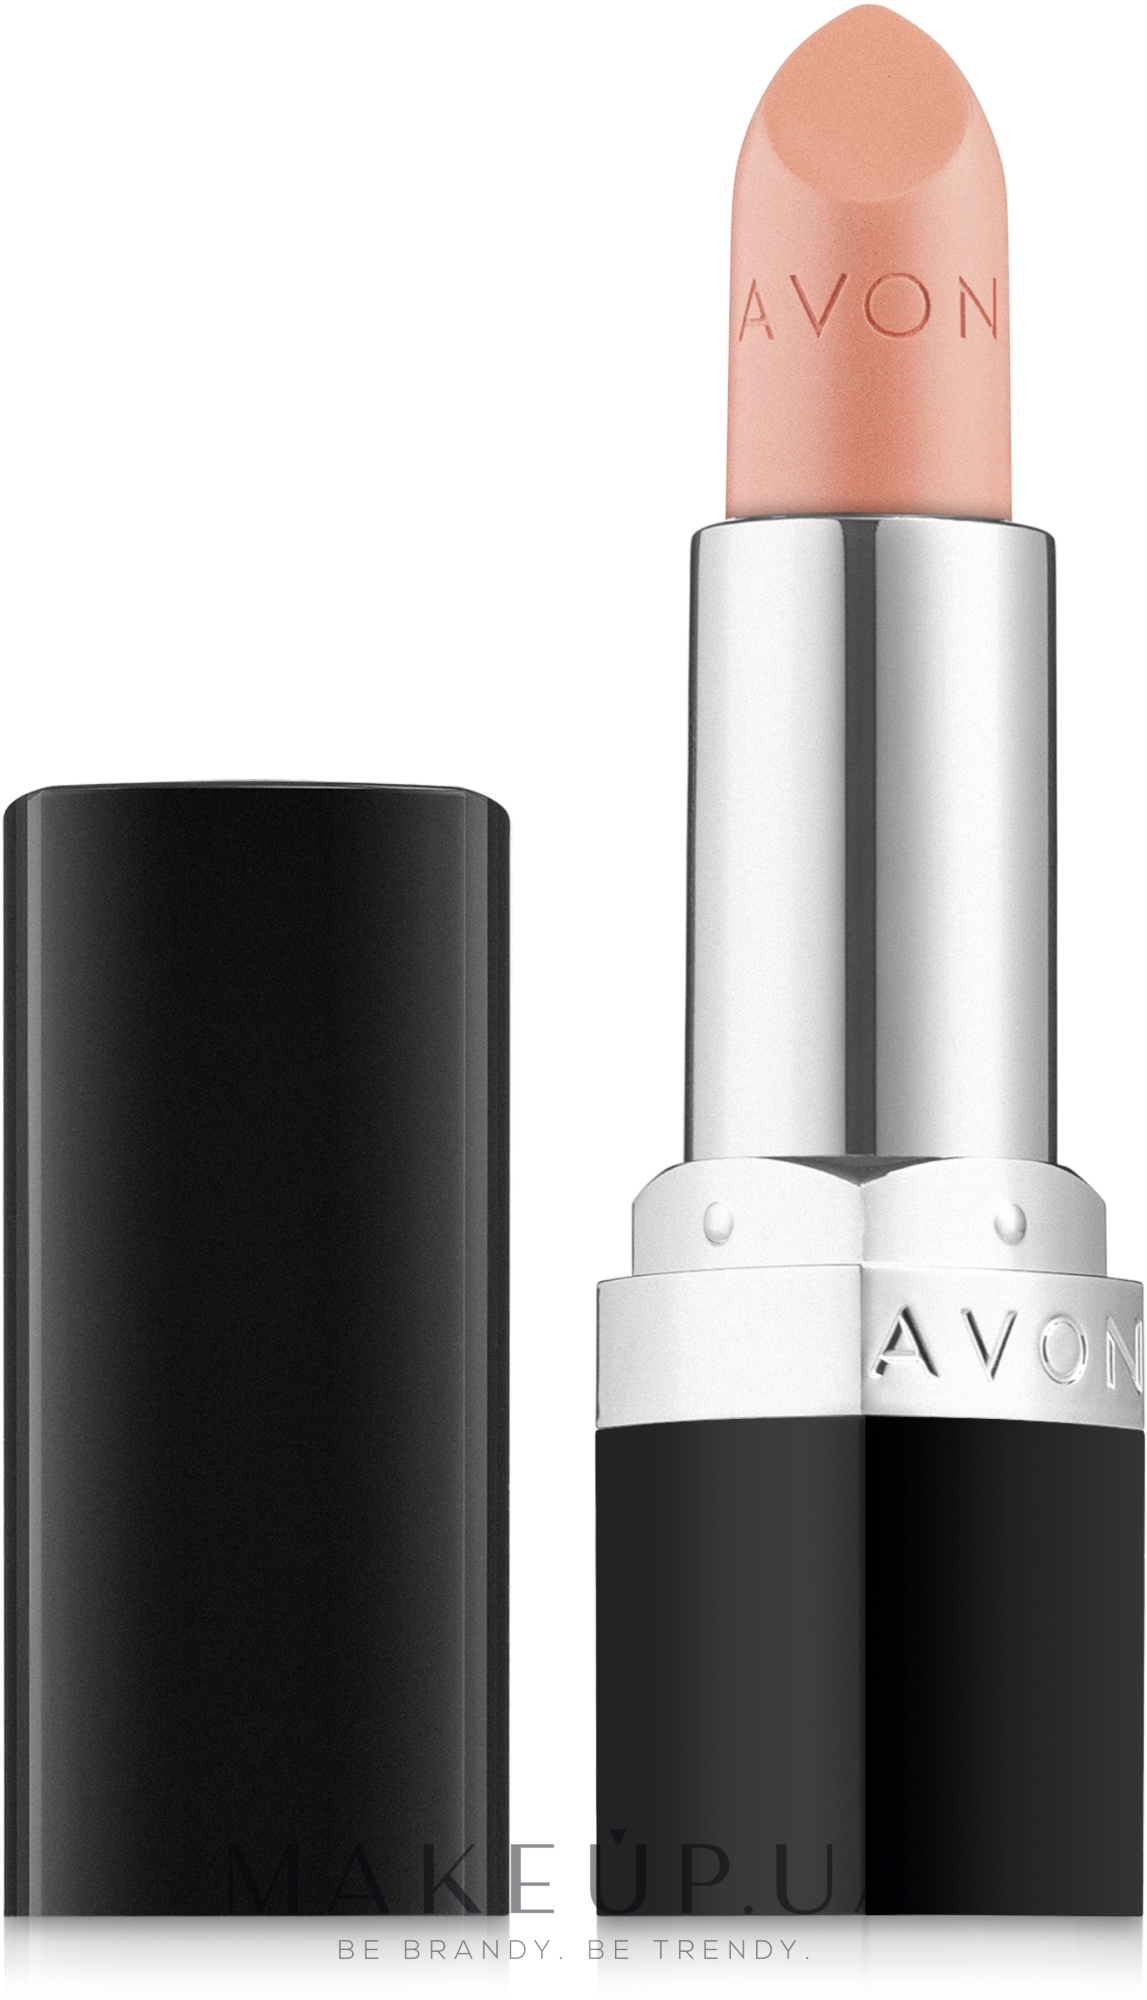 Avon Ultra Color Lipstick